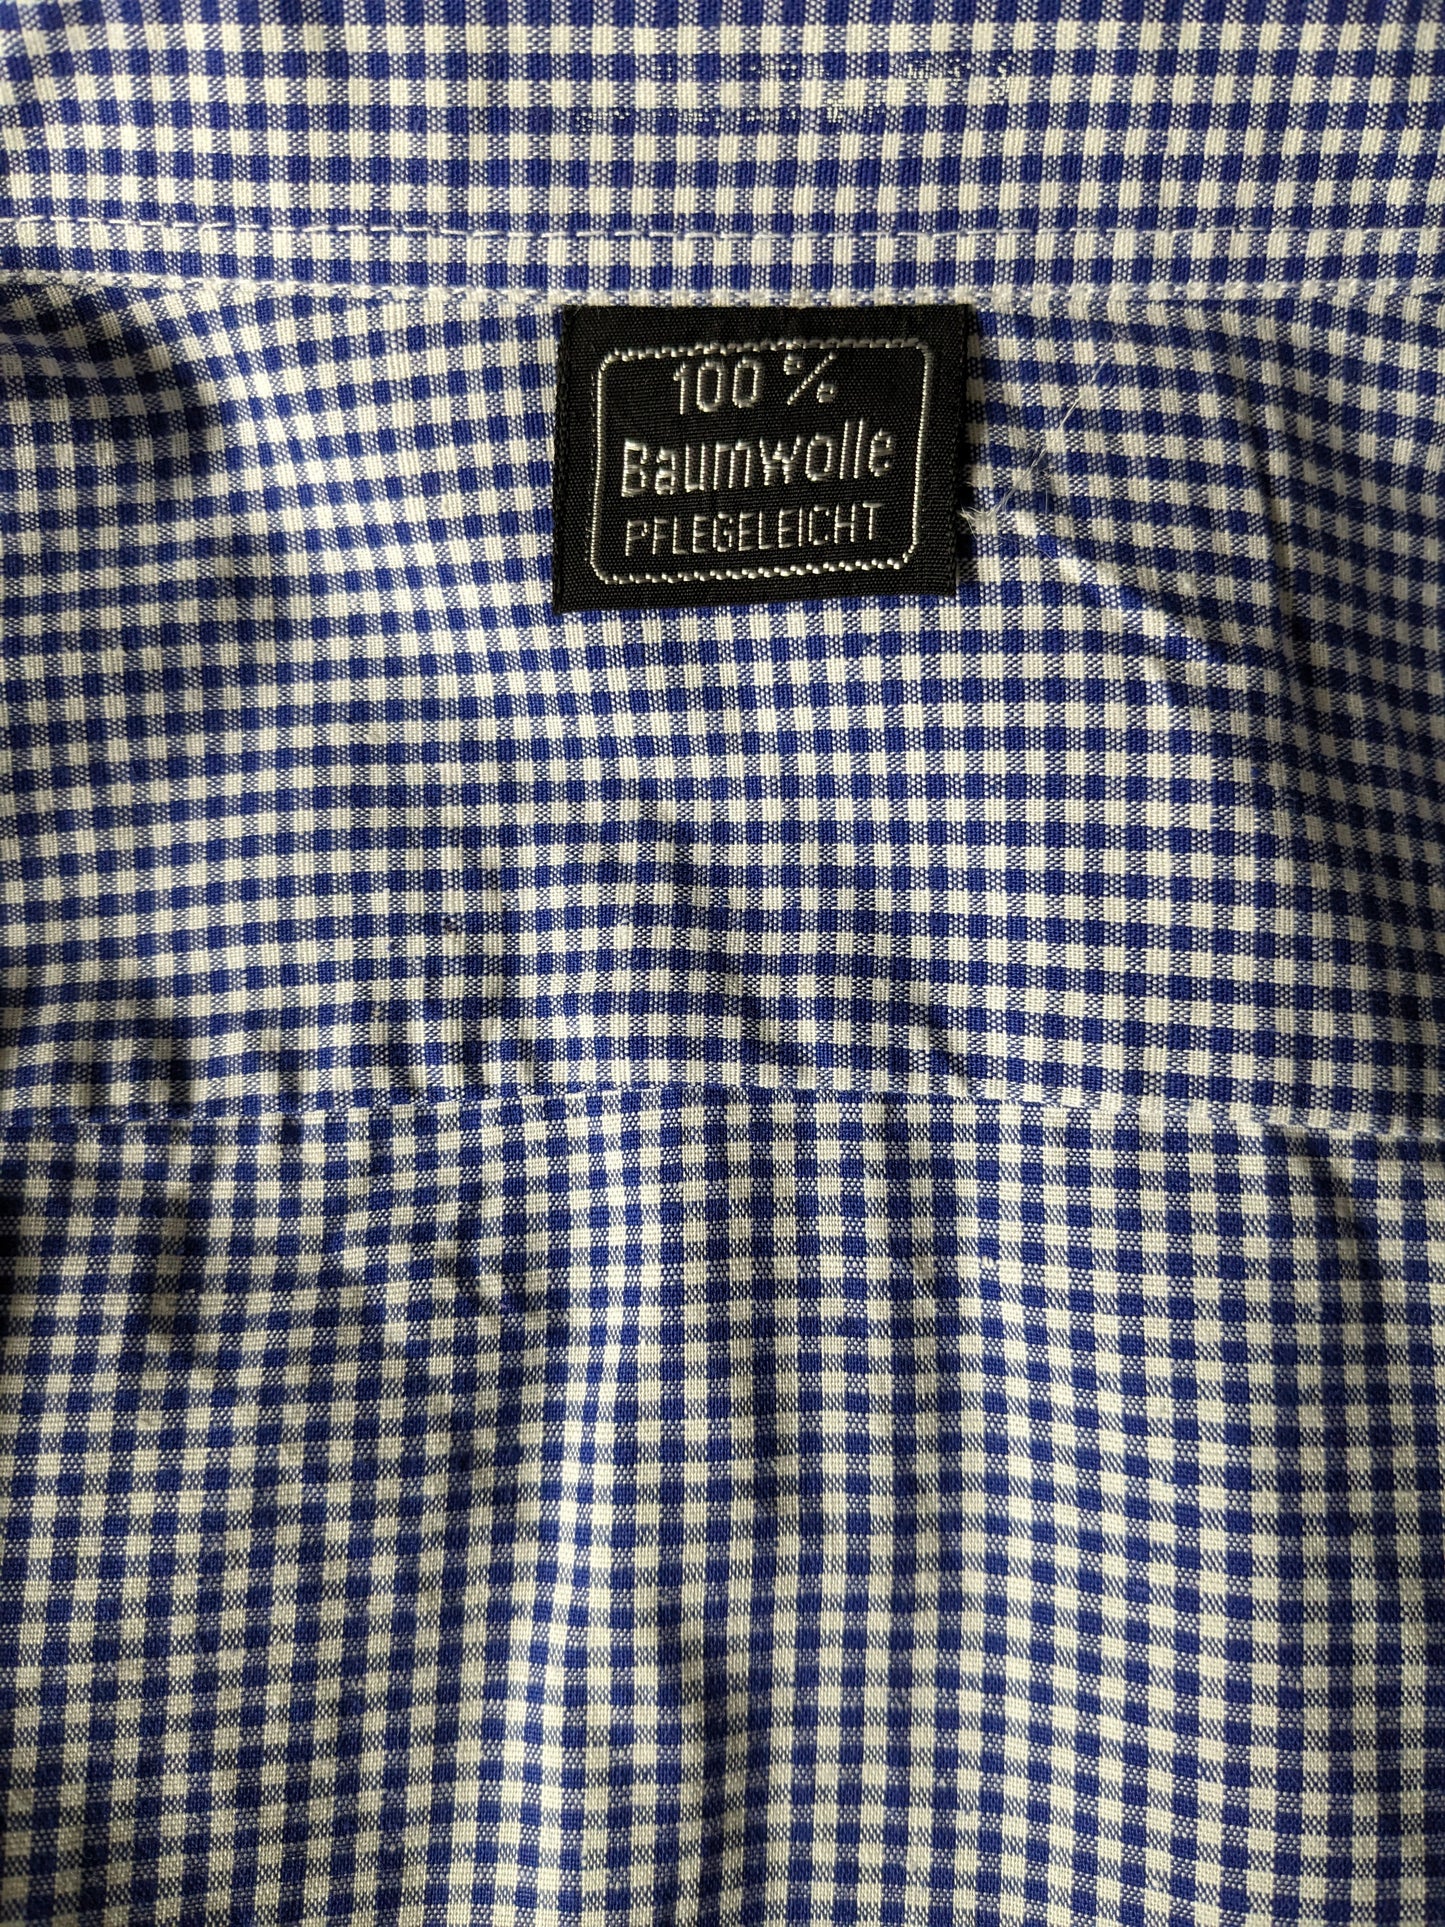 Vintage 70's shirt. Blue white checkered motif. Size L.